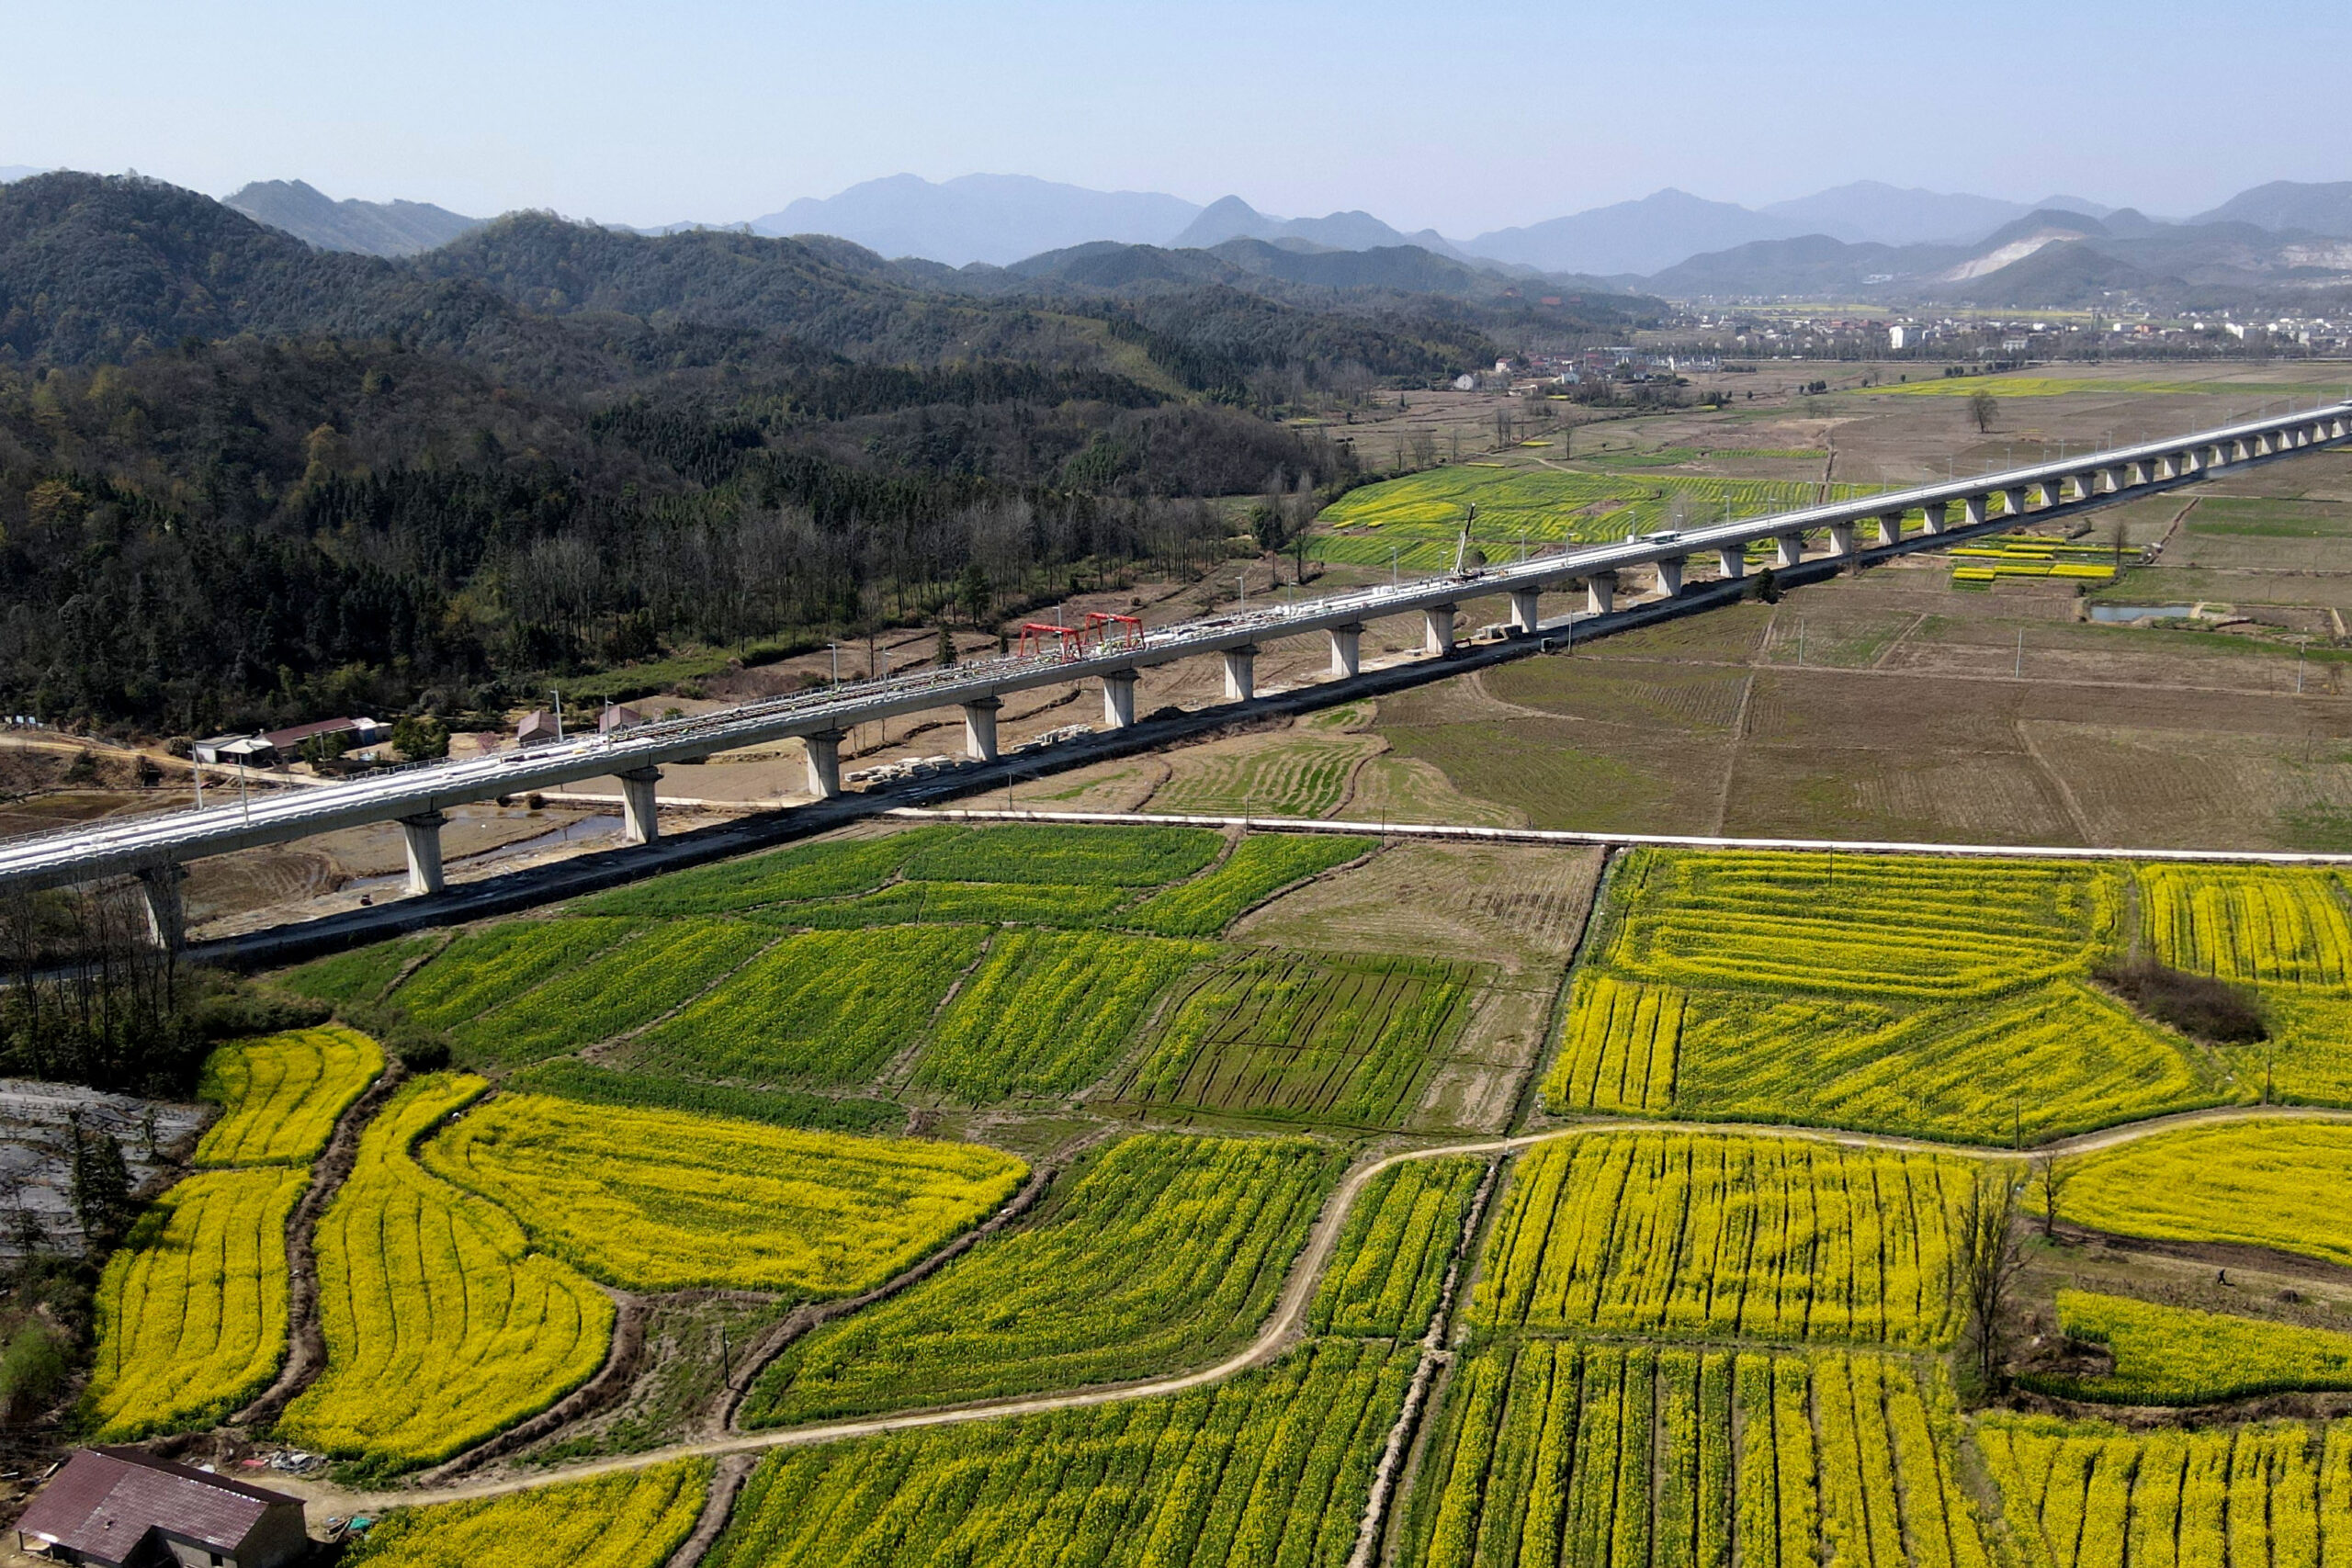 ส่องงานสร้าง 'รางไร้หินโรยทาง' ของทางรถไฟฉือโจว-หวงซาน